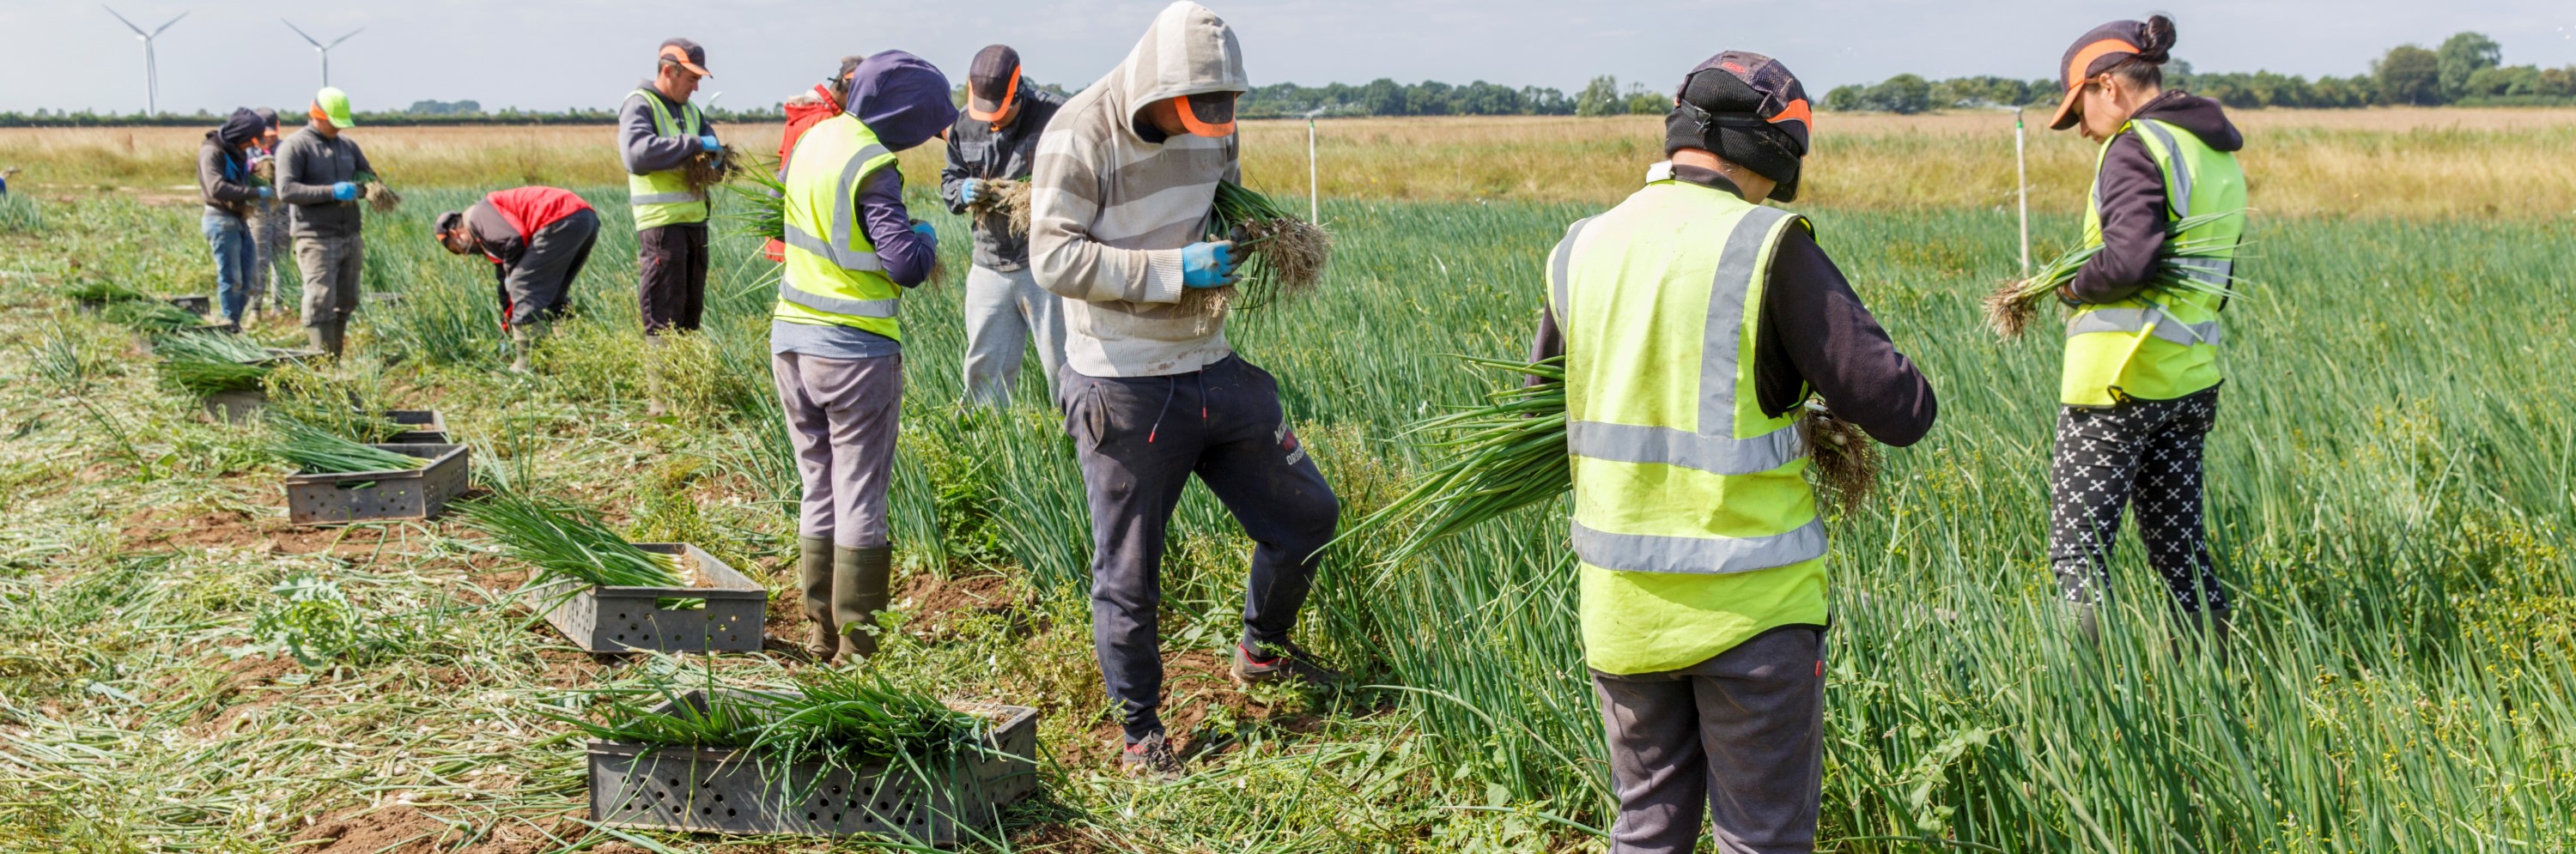 Hort seasonal workers harvesting spring onions